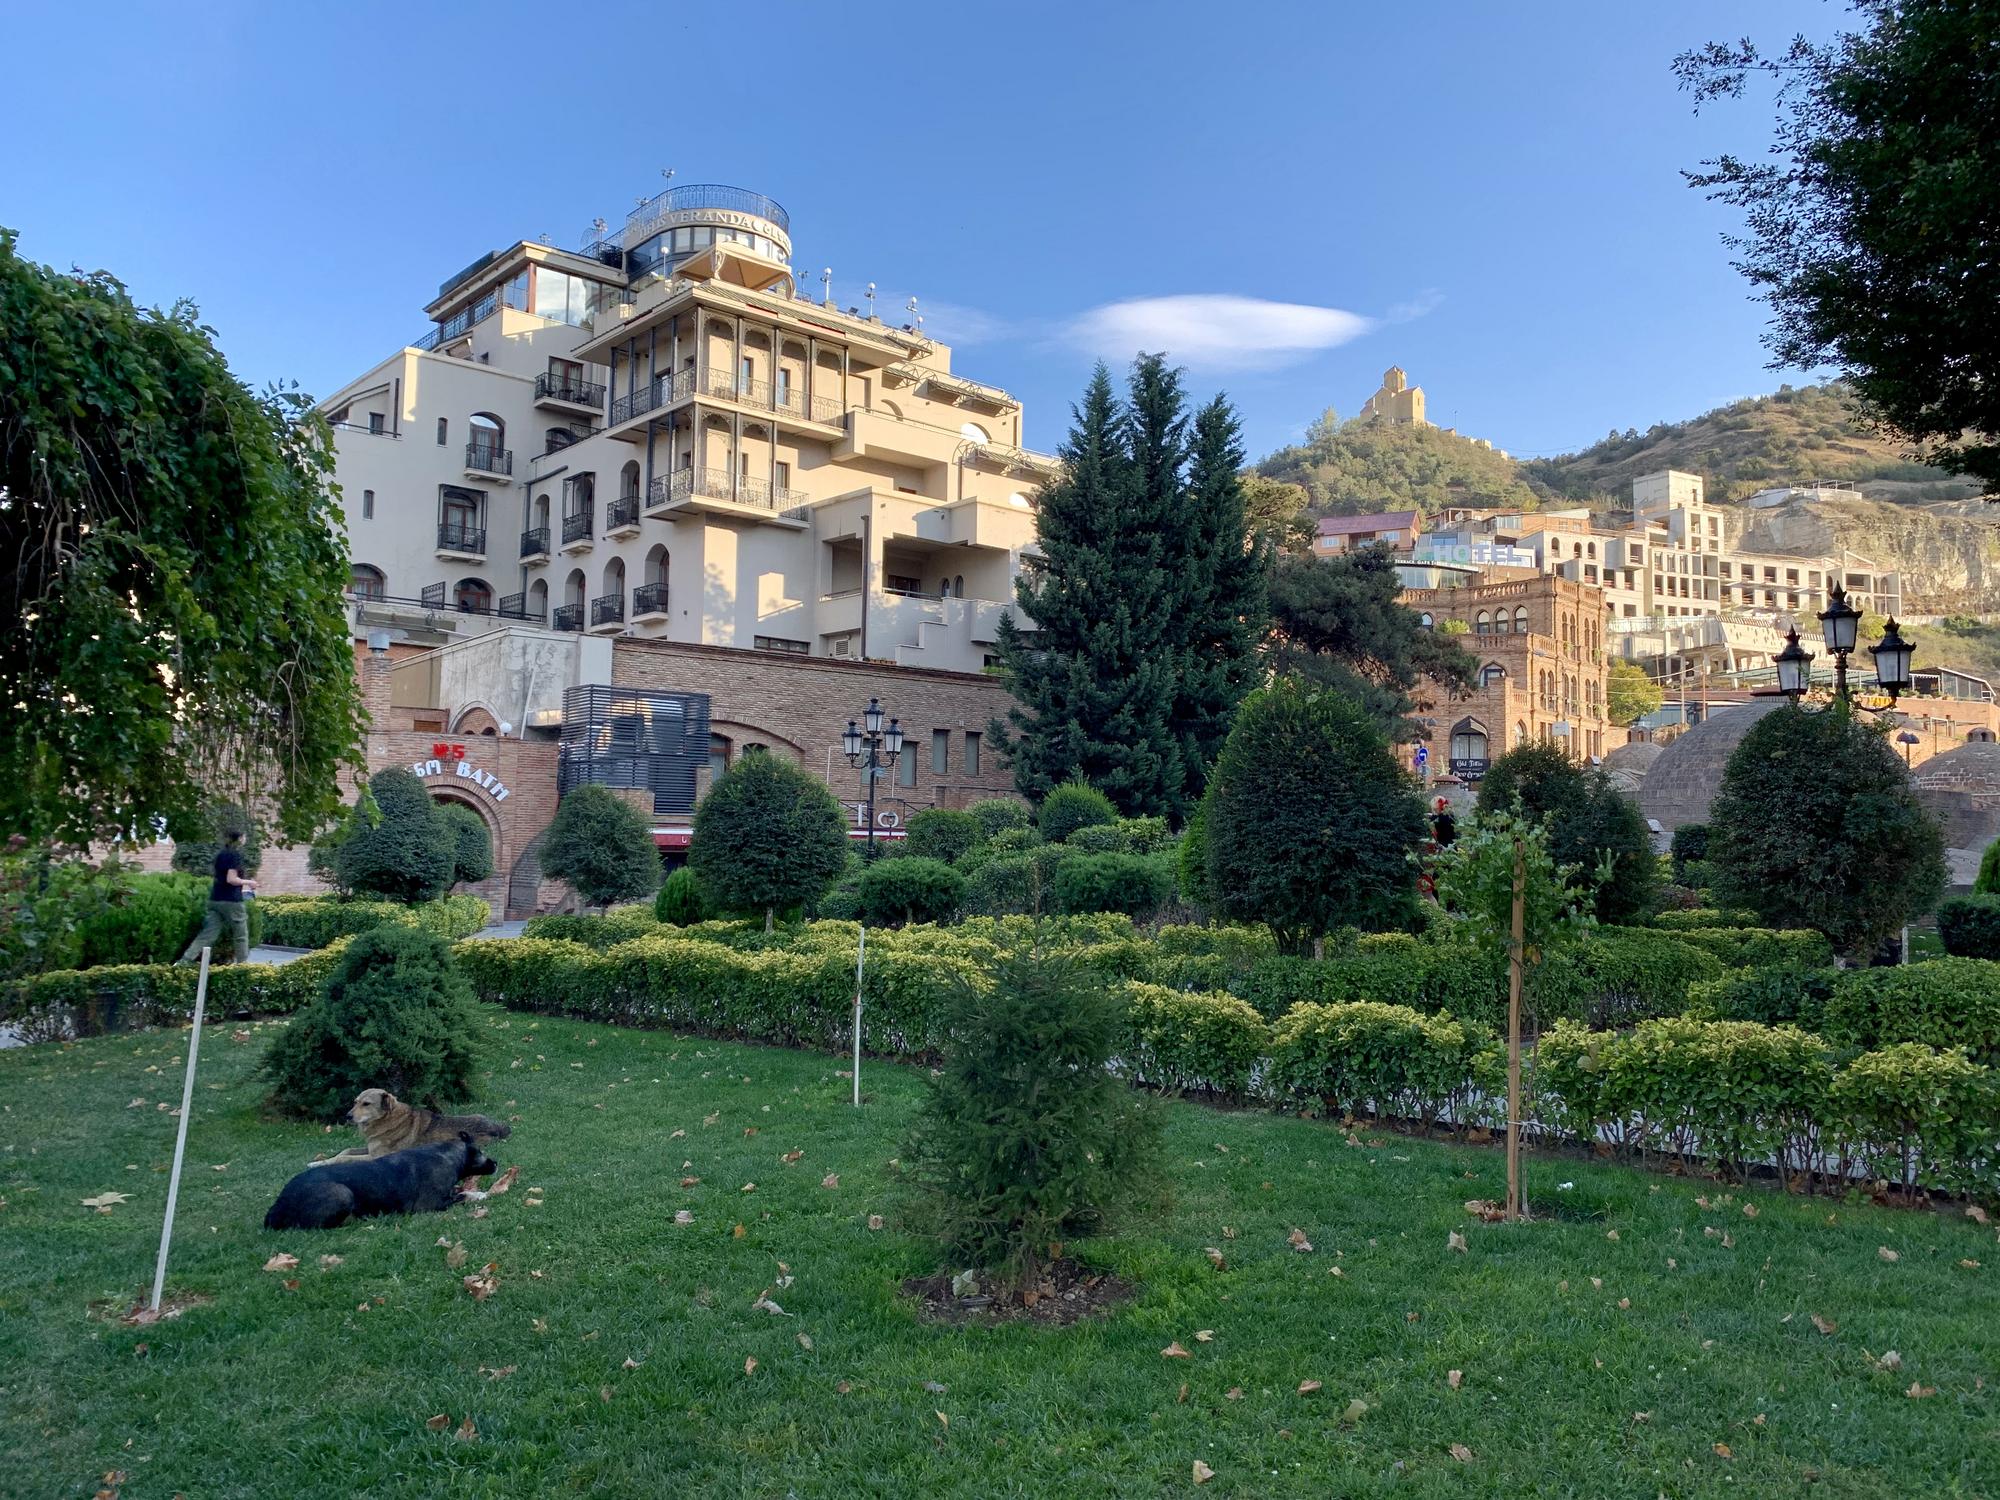 🇬🇪 Tbilisi, Georgia, October 2019.